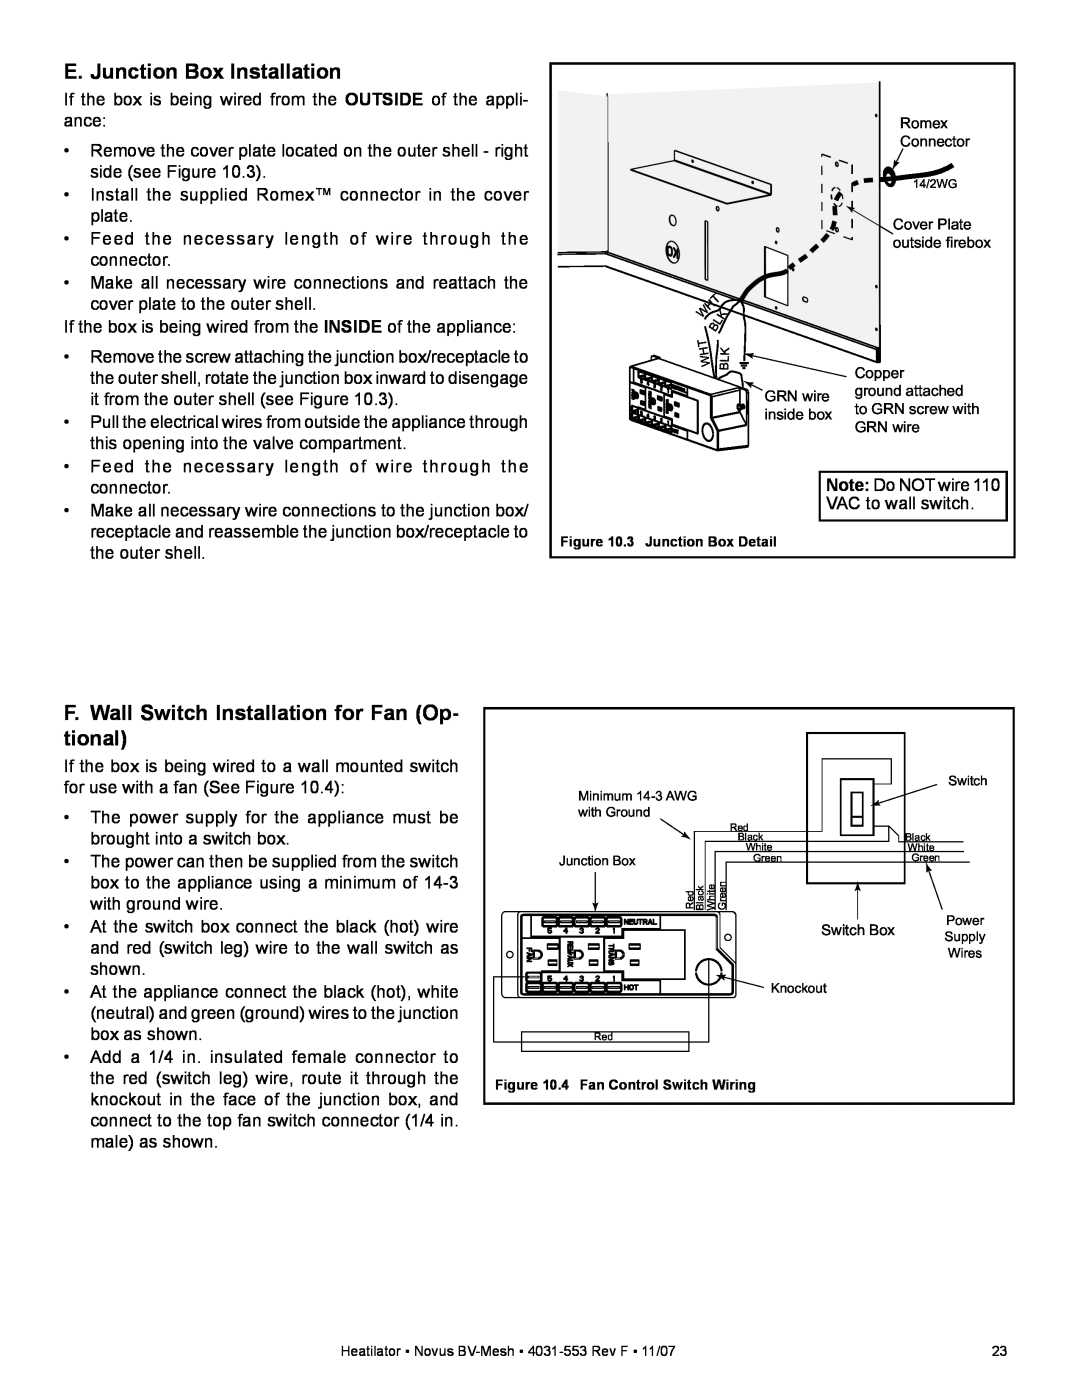 Heatiator NB3933M, NB4236MI, NB4842MI E. Junction Box Installation, F.Wall Switch Installation for Fan Op- tional 